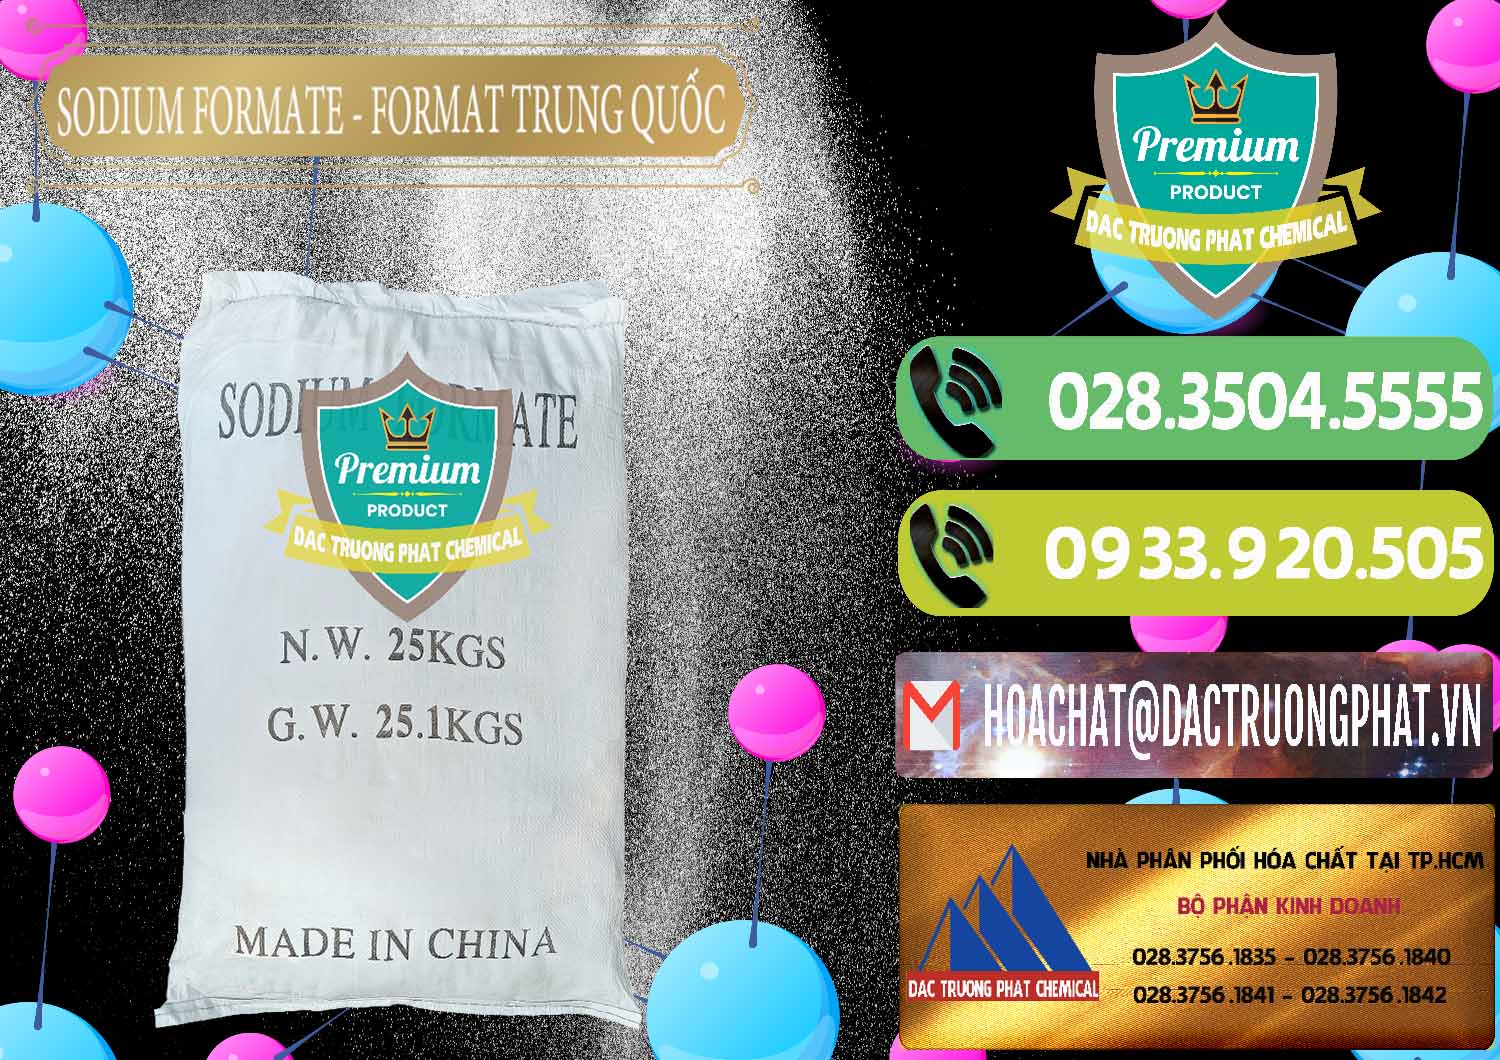 Đơn vị chuyên bán ( phân phối ) Sodium Formate - Natri Format Trung Quốc China - 0142 - Nhà cung cấp ( nhập khẩu ) hóa chất tại TP.HCM - hoachatmientay.vn